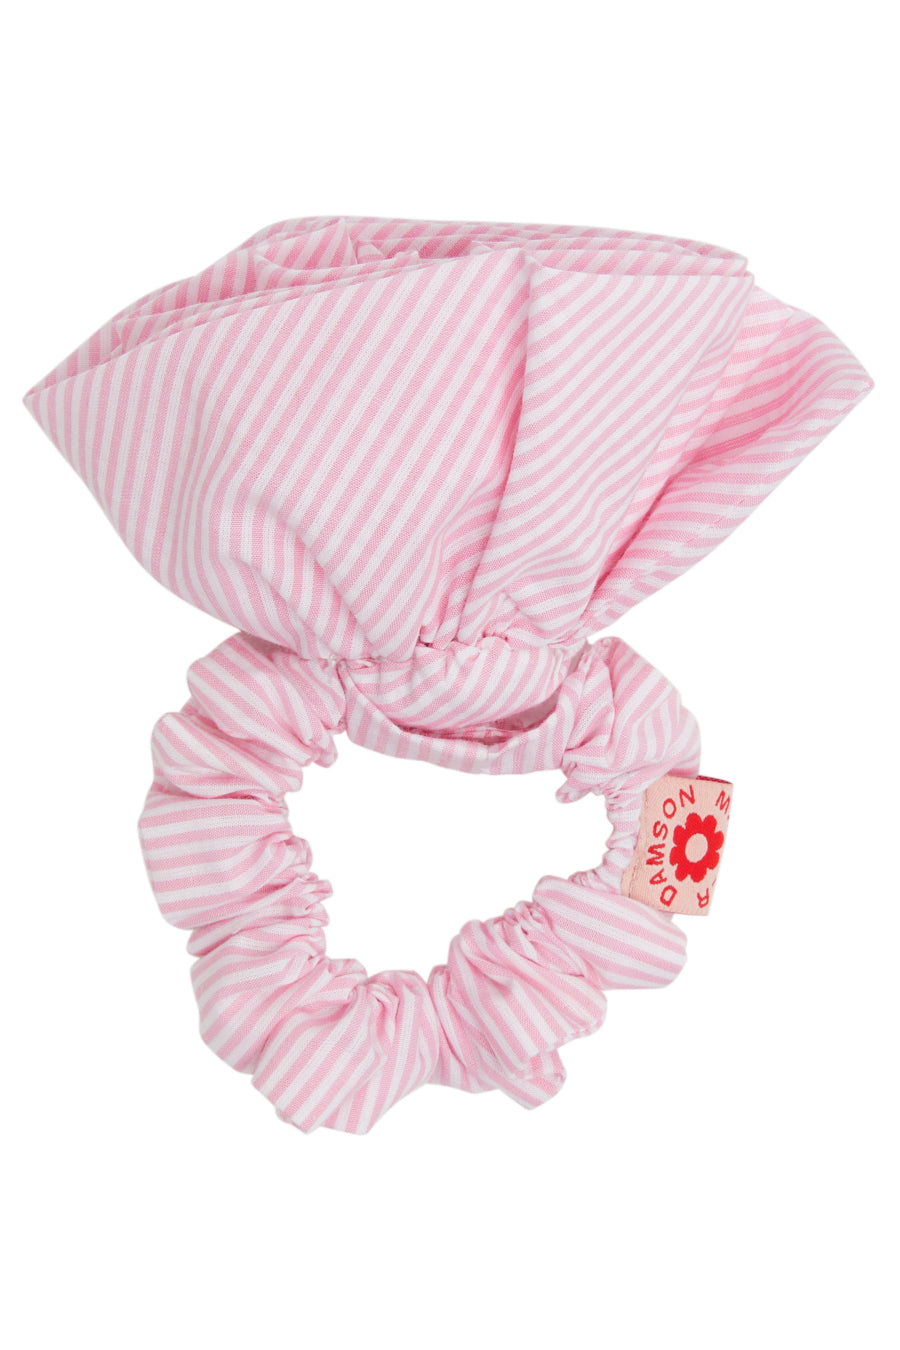 rosette scrunchie in pink stripe